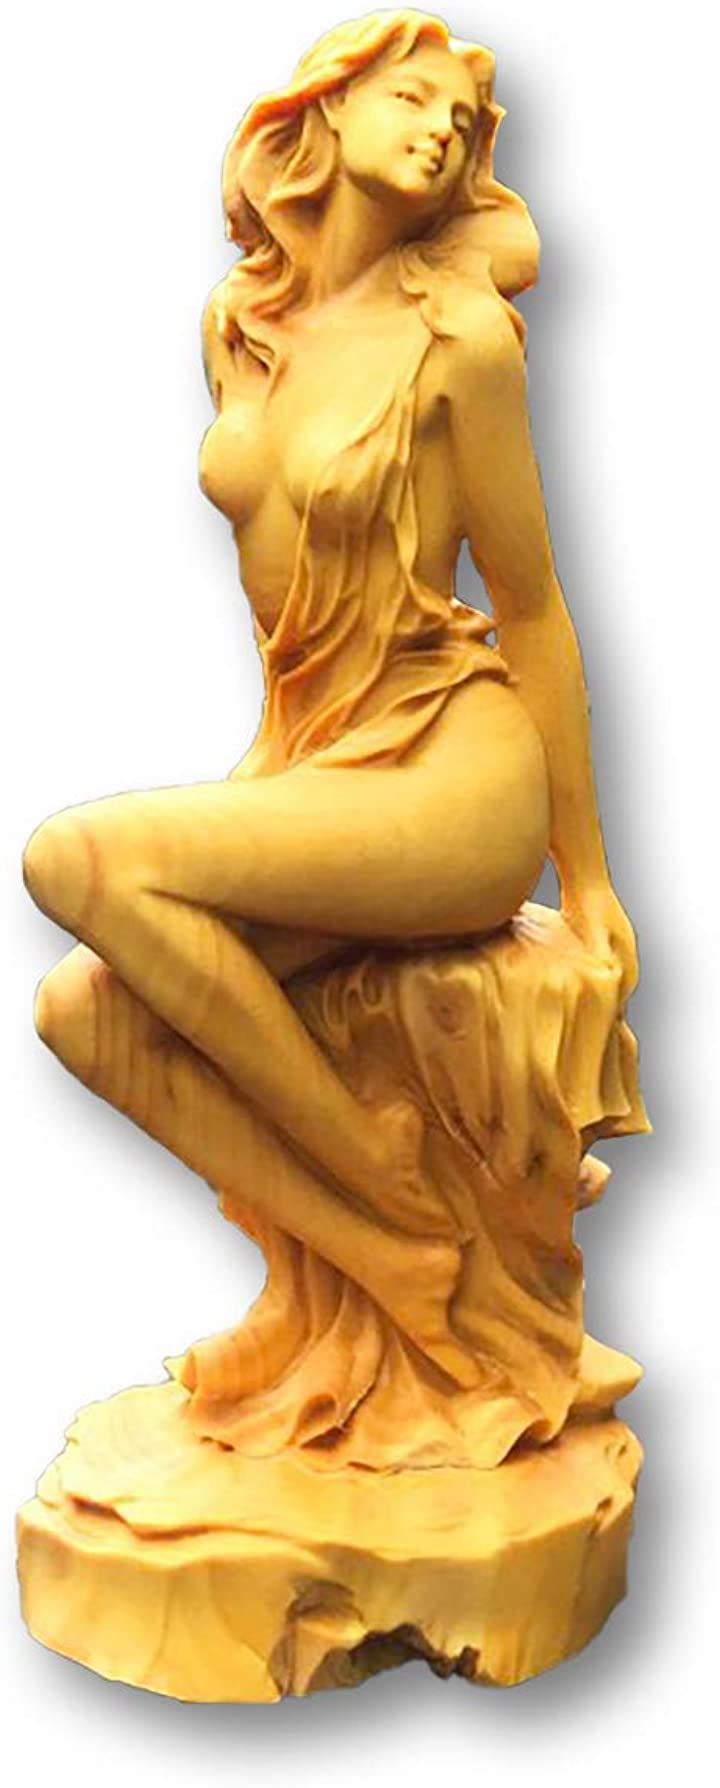 ツゲの木彫り 女神 ヌード 美少女 木製 彫刻 置物 高さ 15cm